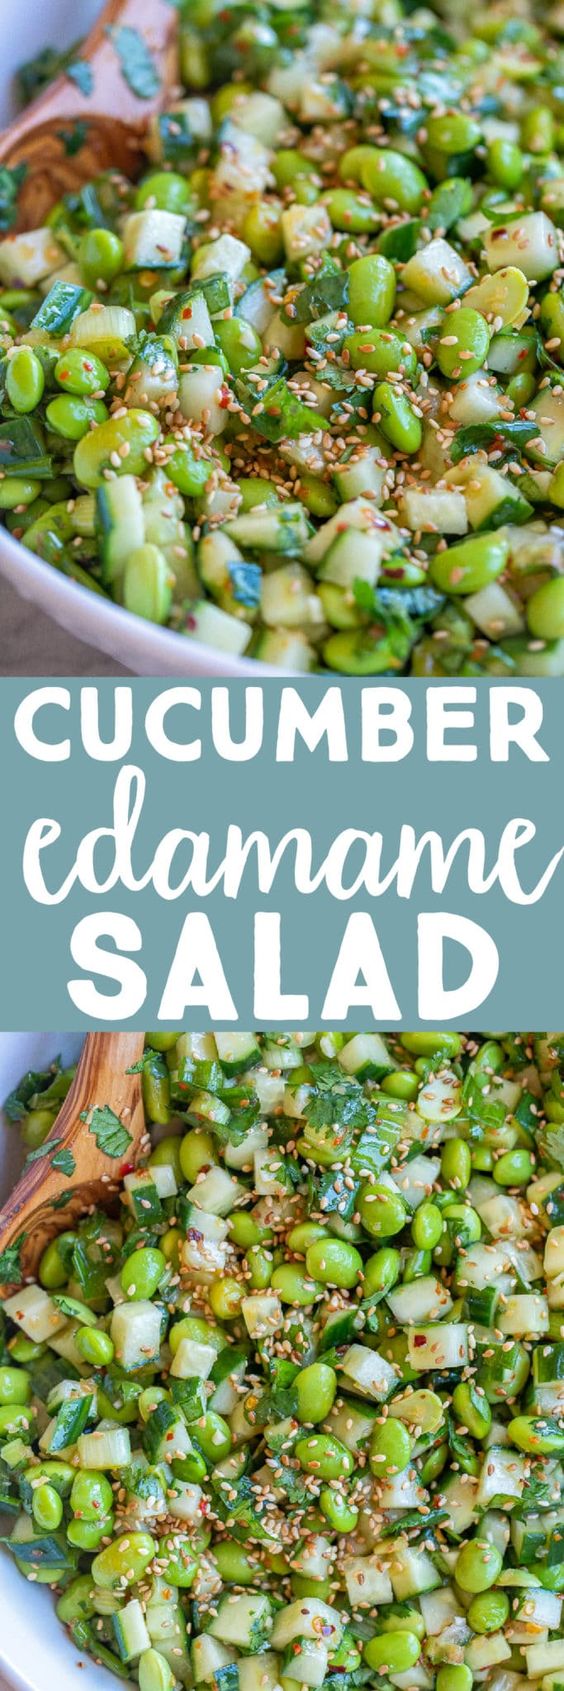 Cucumber-Edamame-Salad